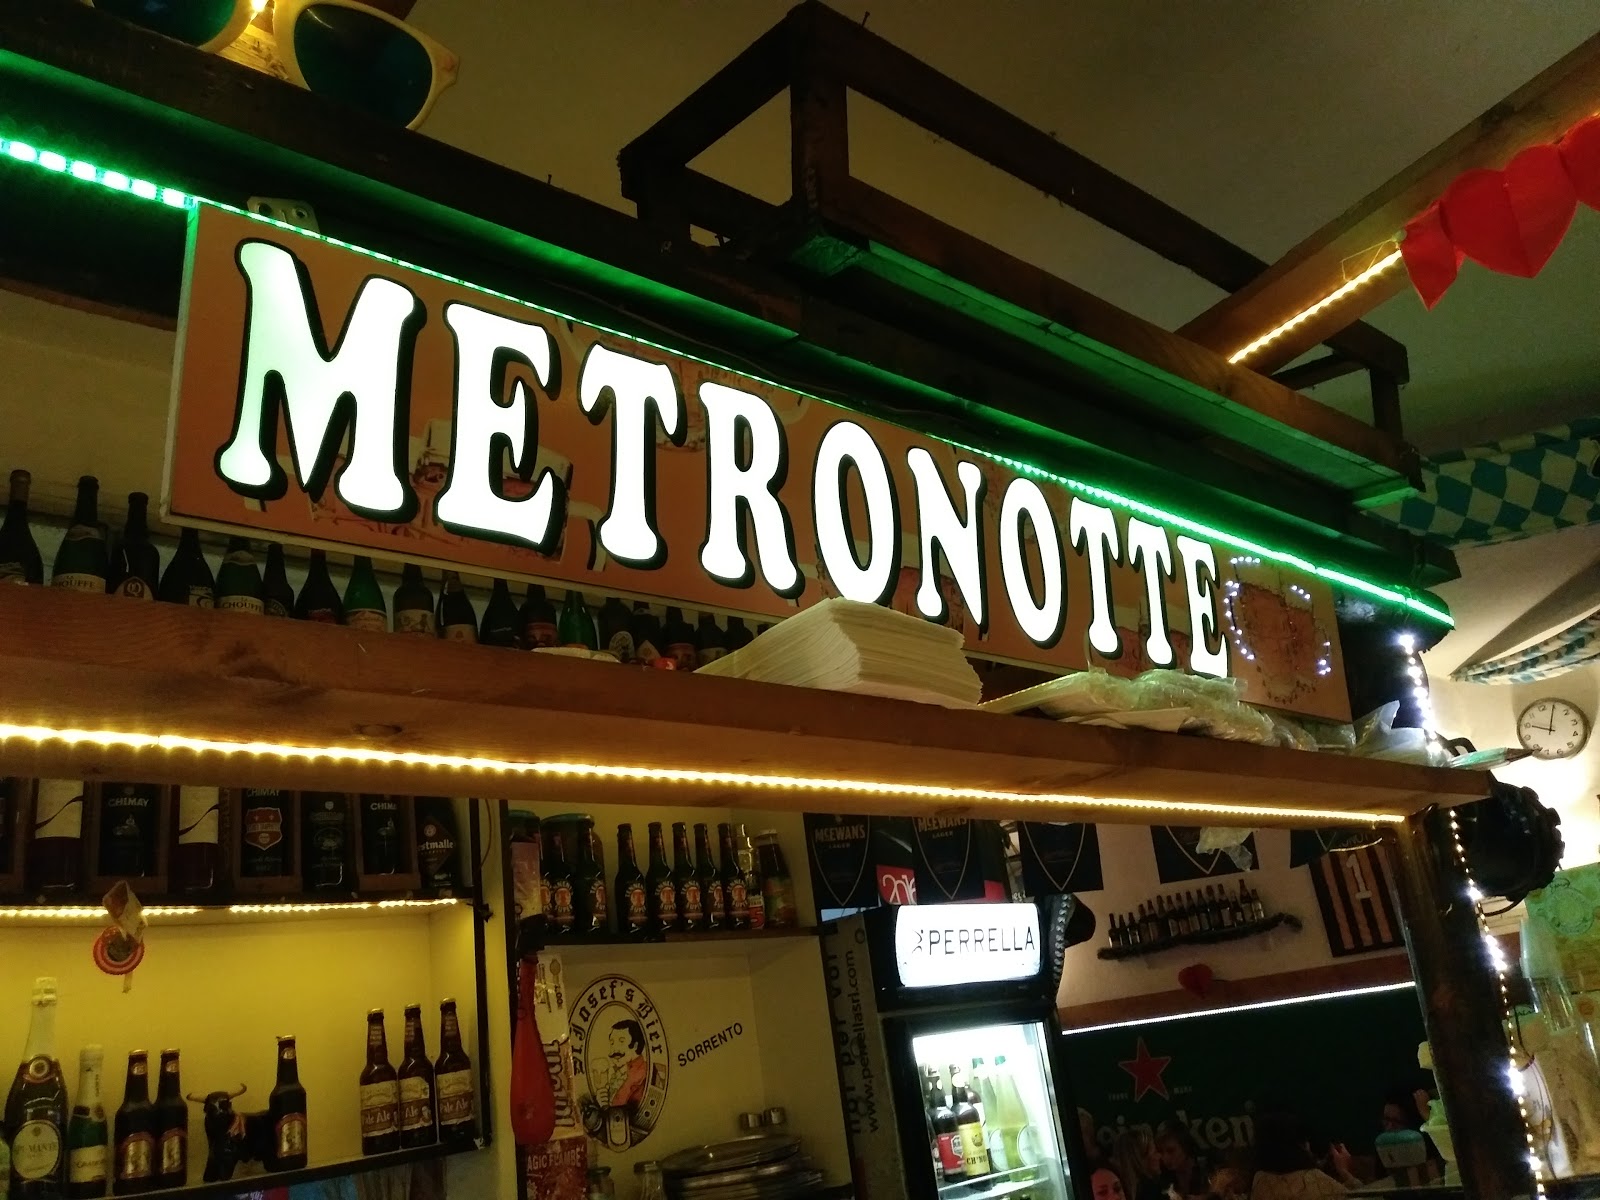 Foto di Ristorante Pizzeria "Gigino Metronotte"